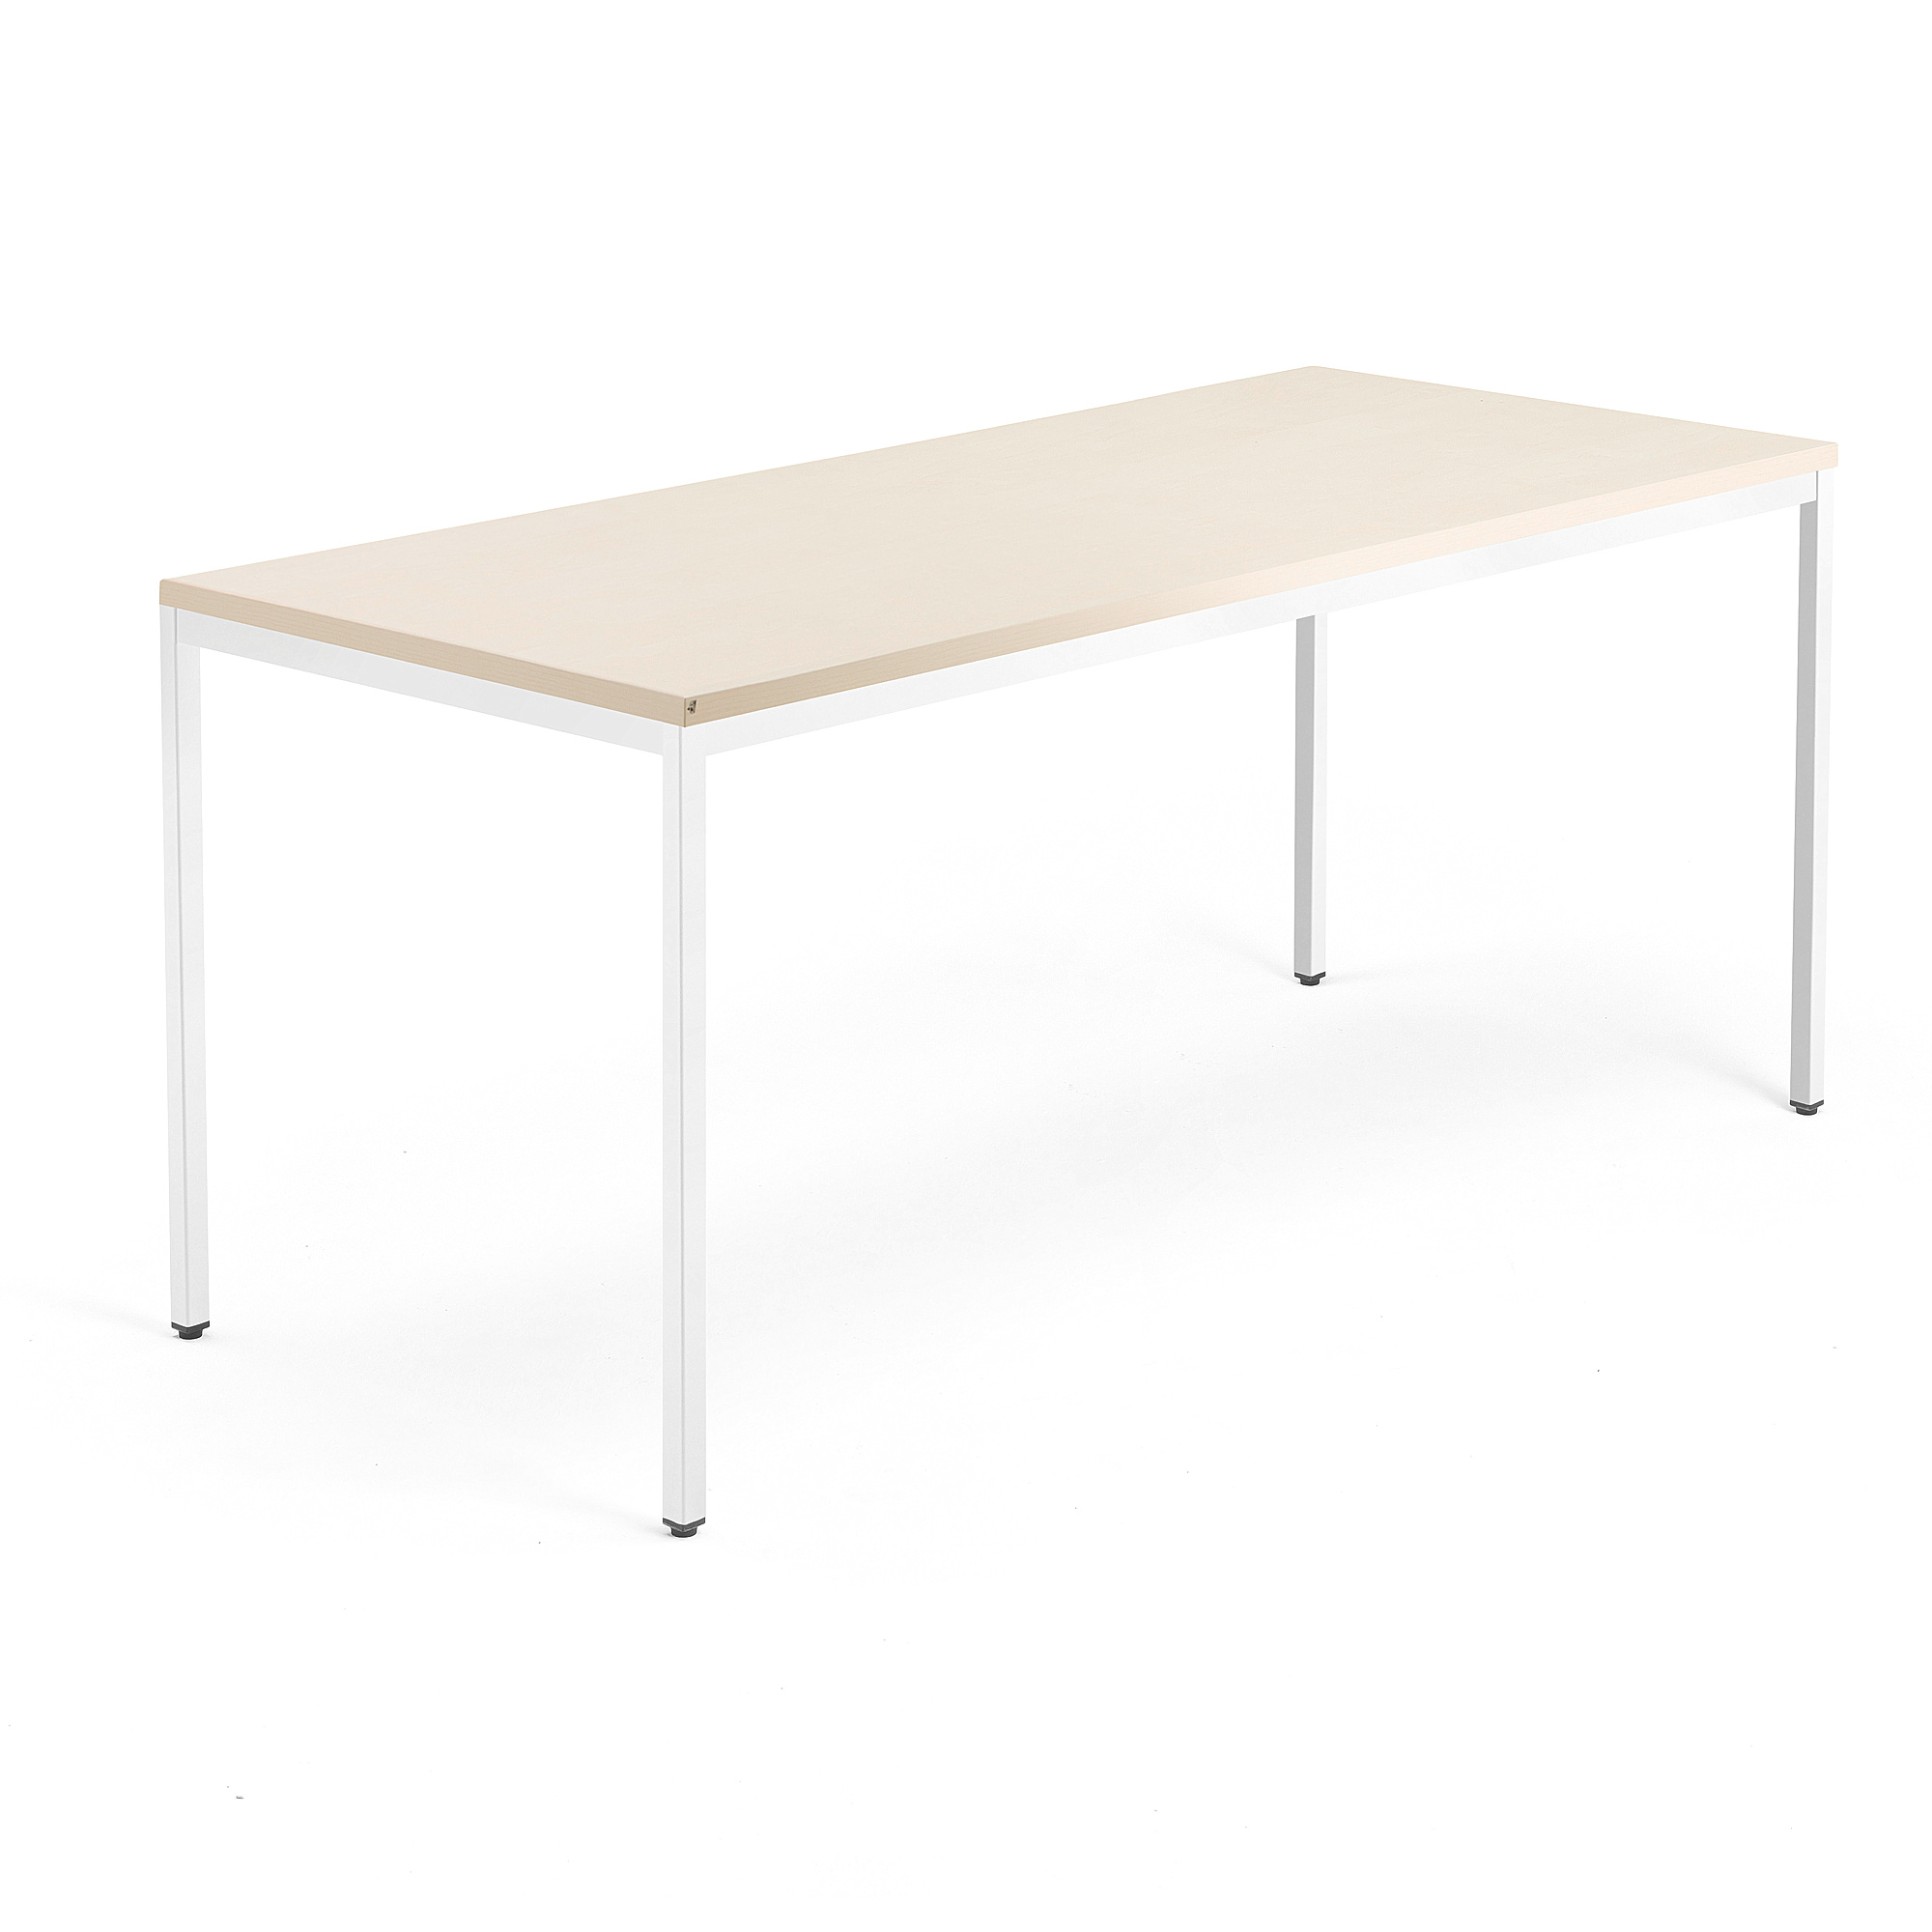 Psací stůl QBUS, 4 nohy, 1800x800 mm, bílý rám, bříza